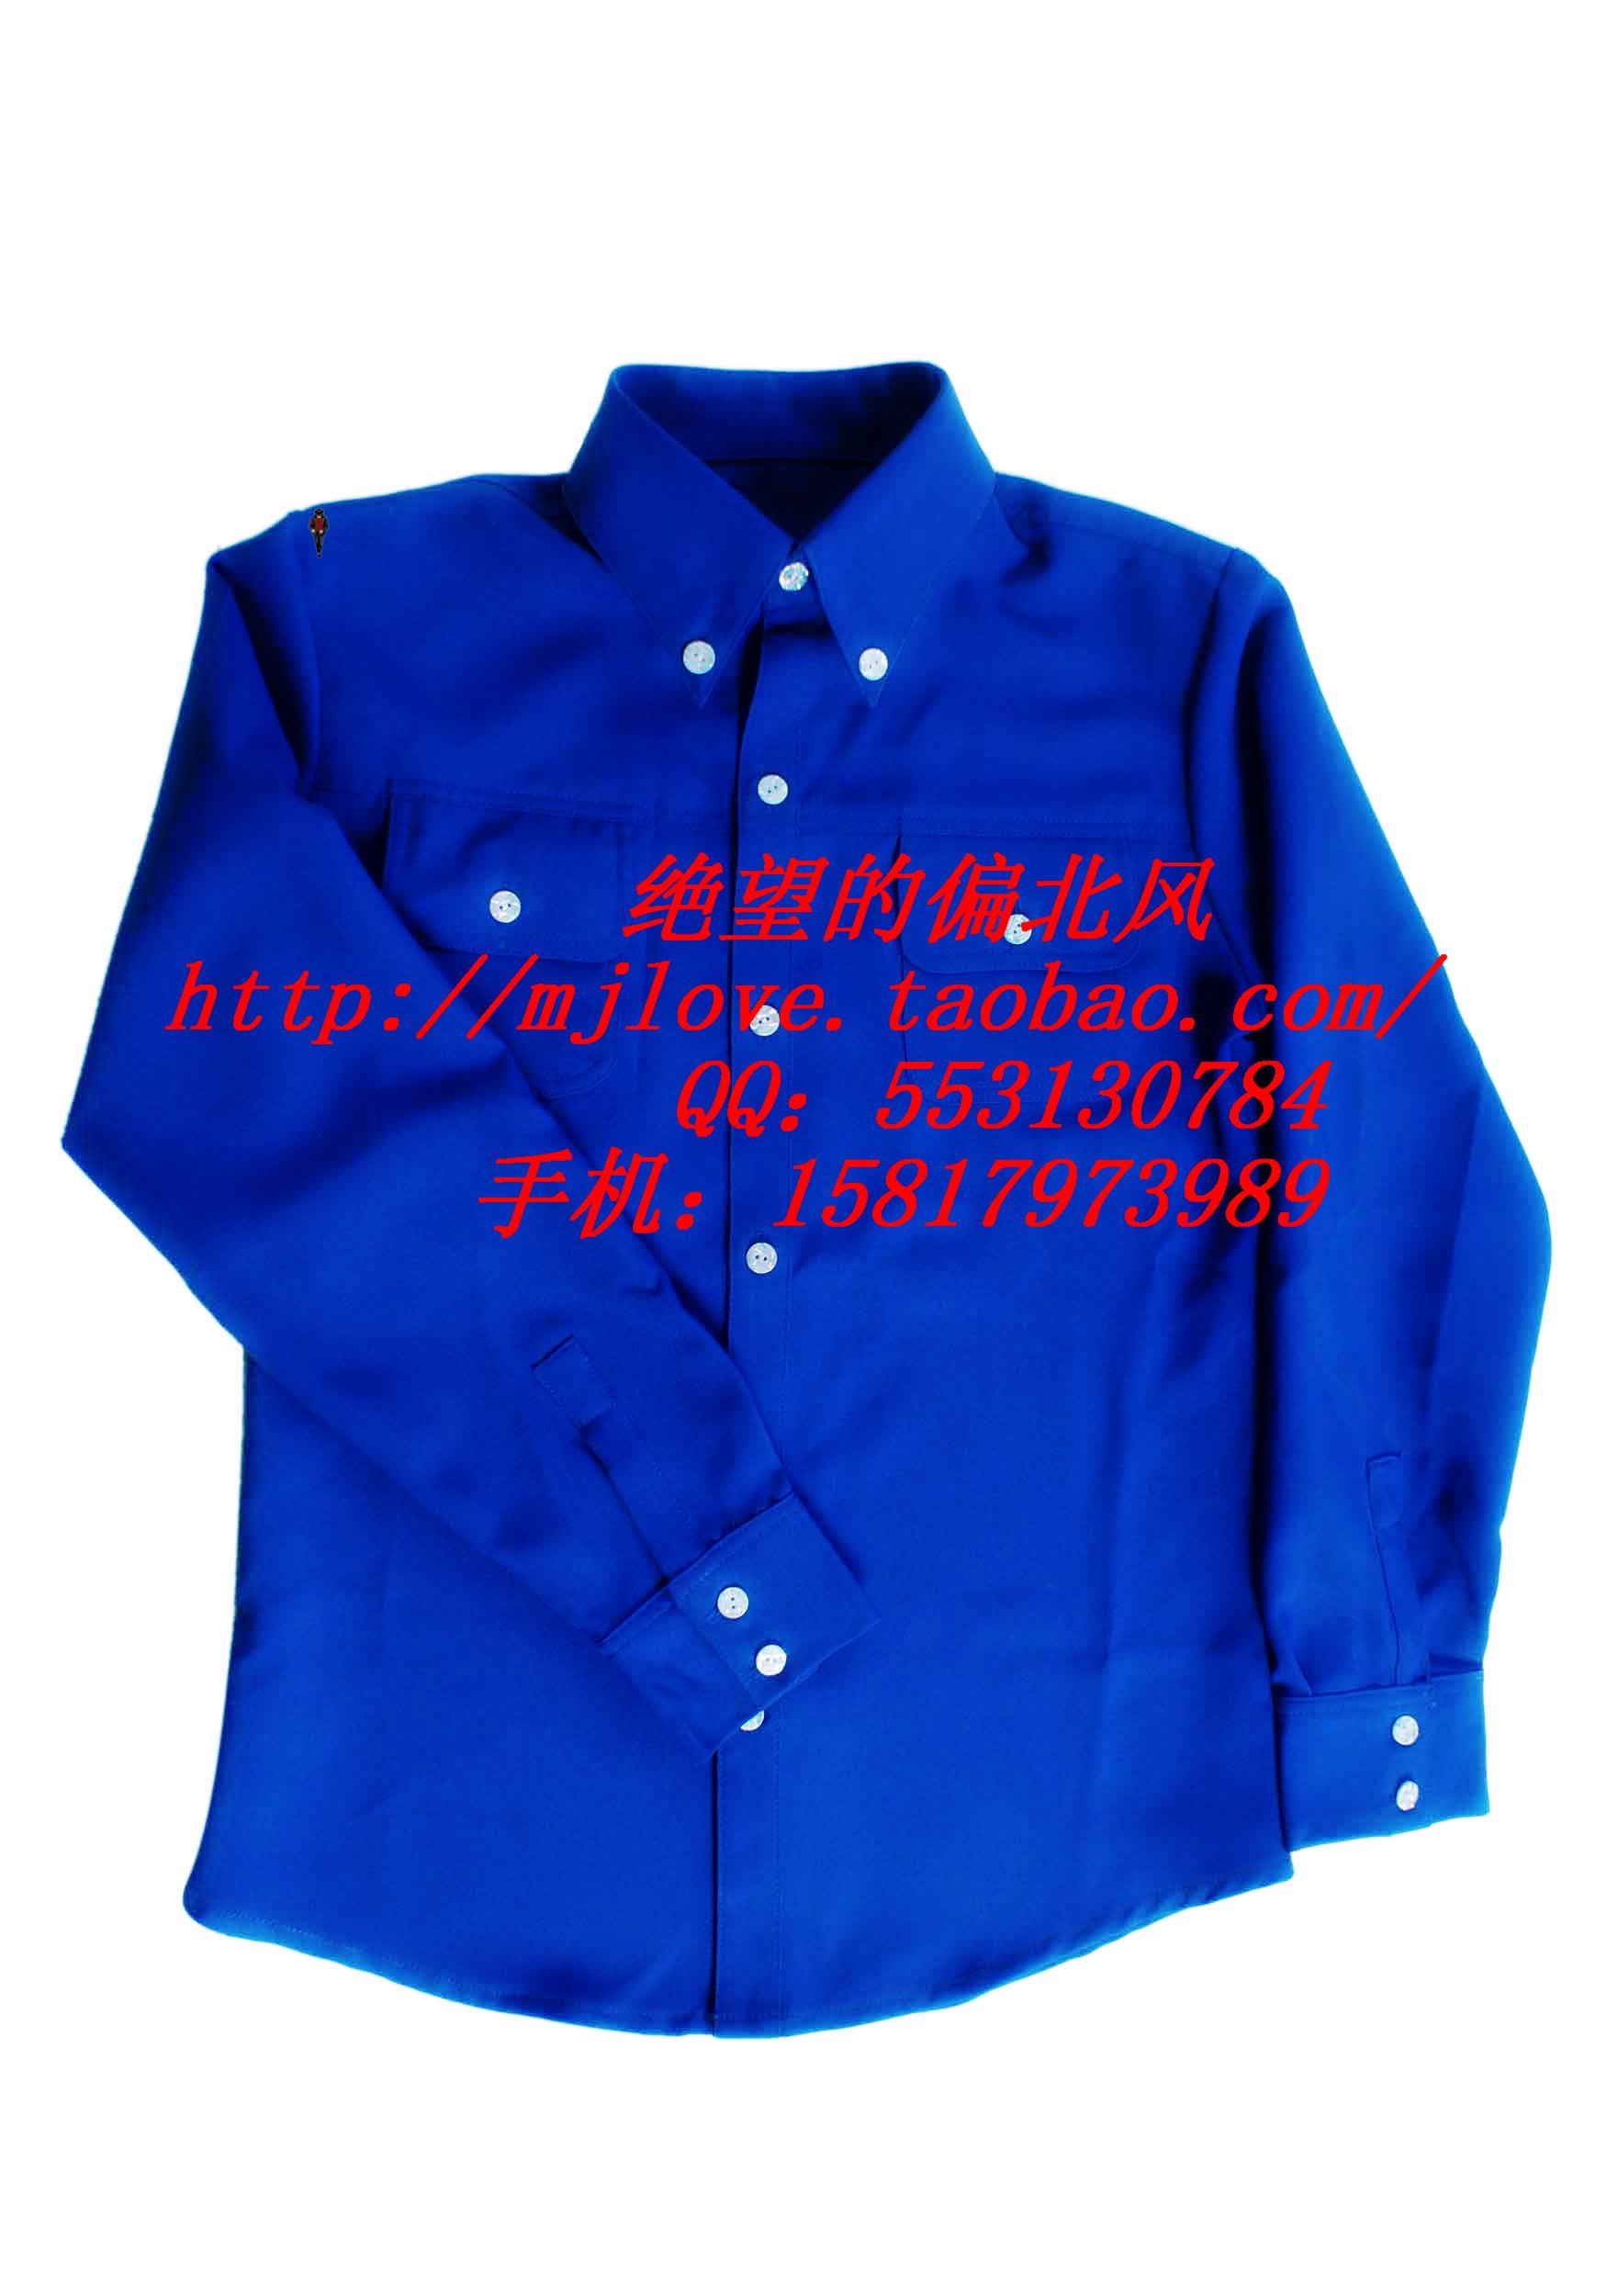 MICHAEL JACKSON/迈克尔杰克逊 蓝色衬衣 /镜中男人蓝色衬衣